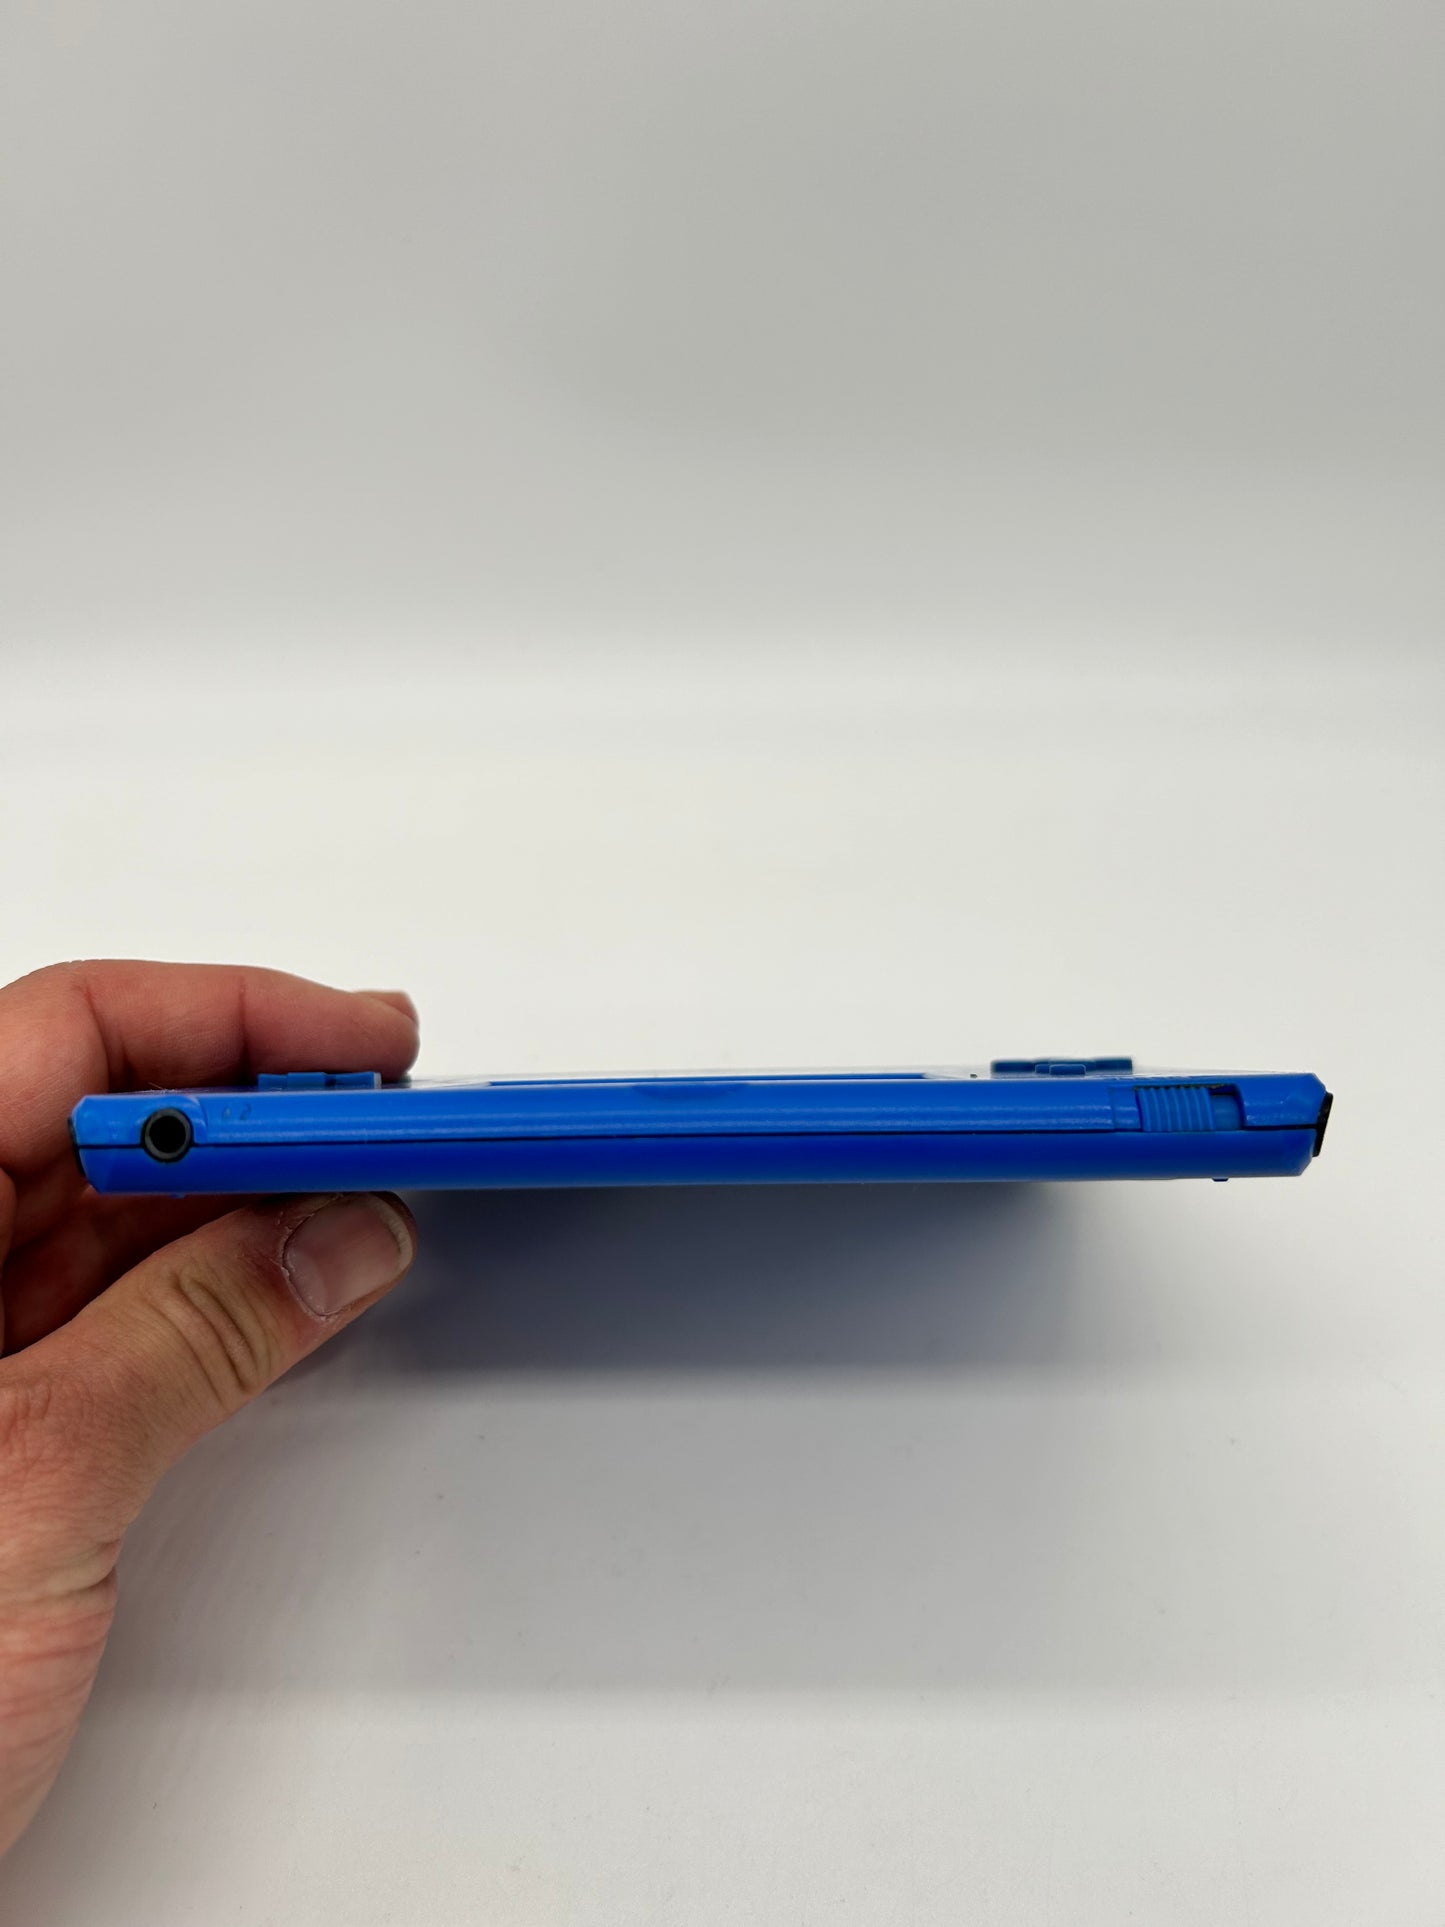 NiNTENDO 3DS CONSOLE | MODEL 2DS ELECTRIC BLUE | MODEL FTR-001